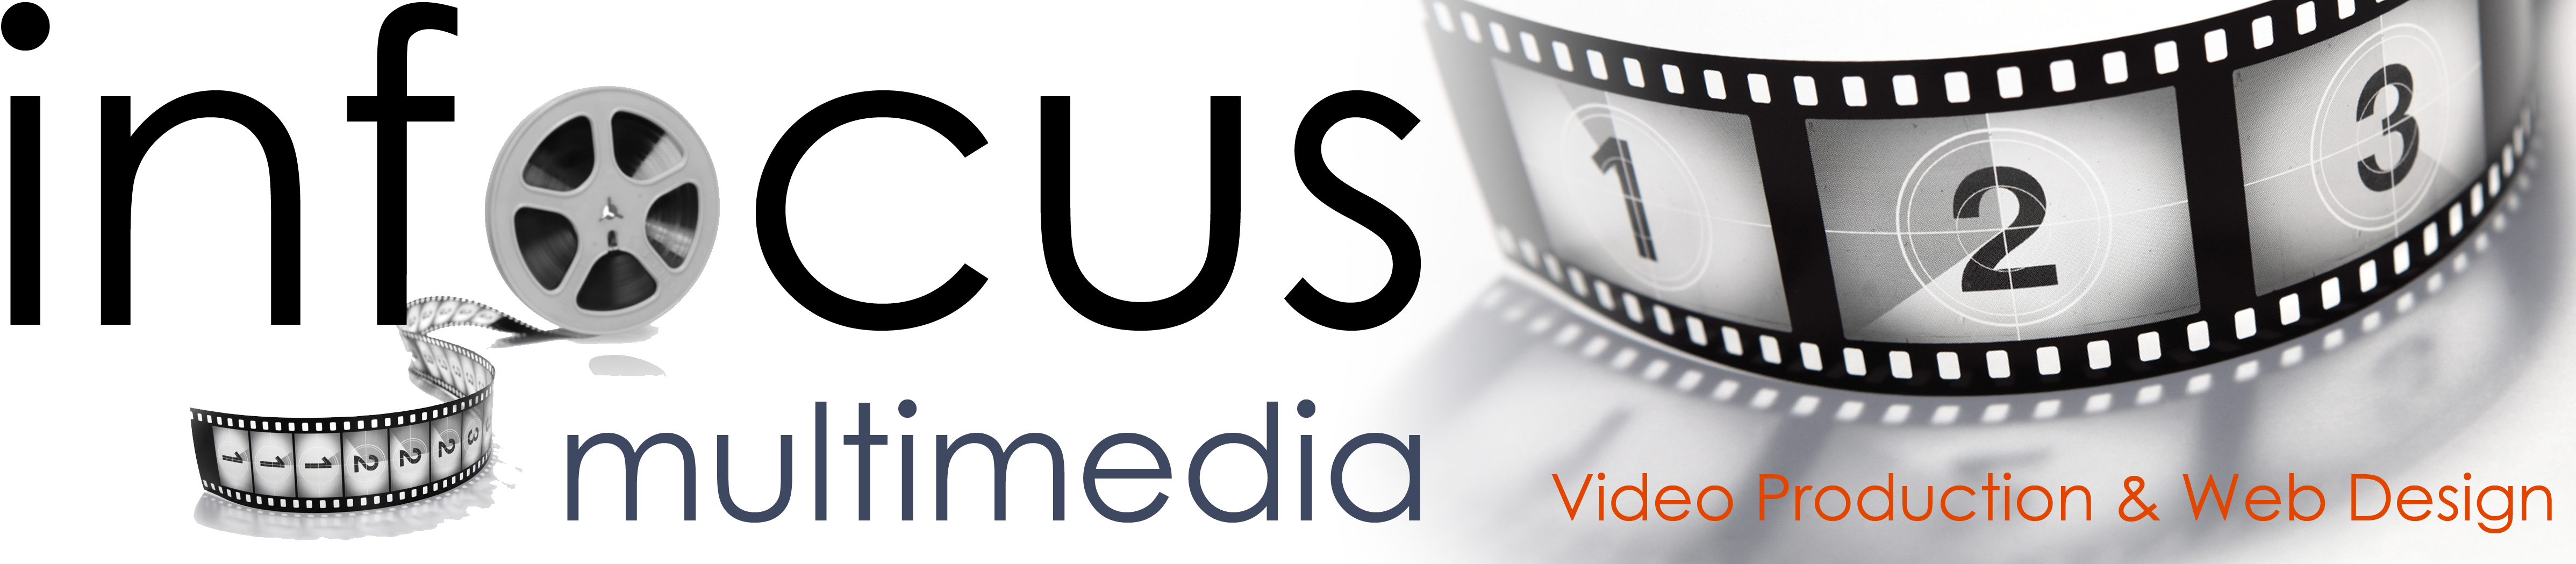 Infocus Multimedia Logo